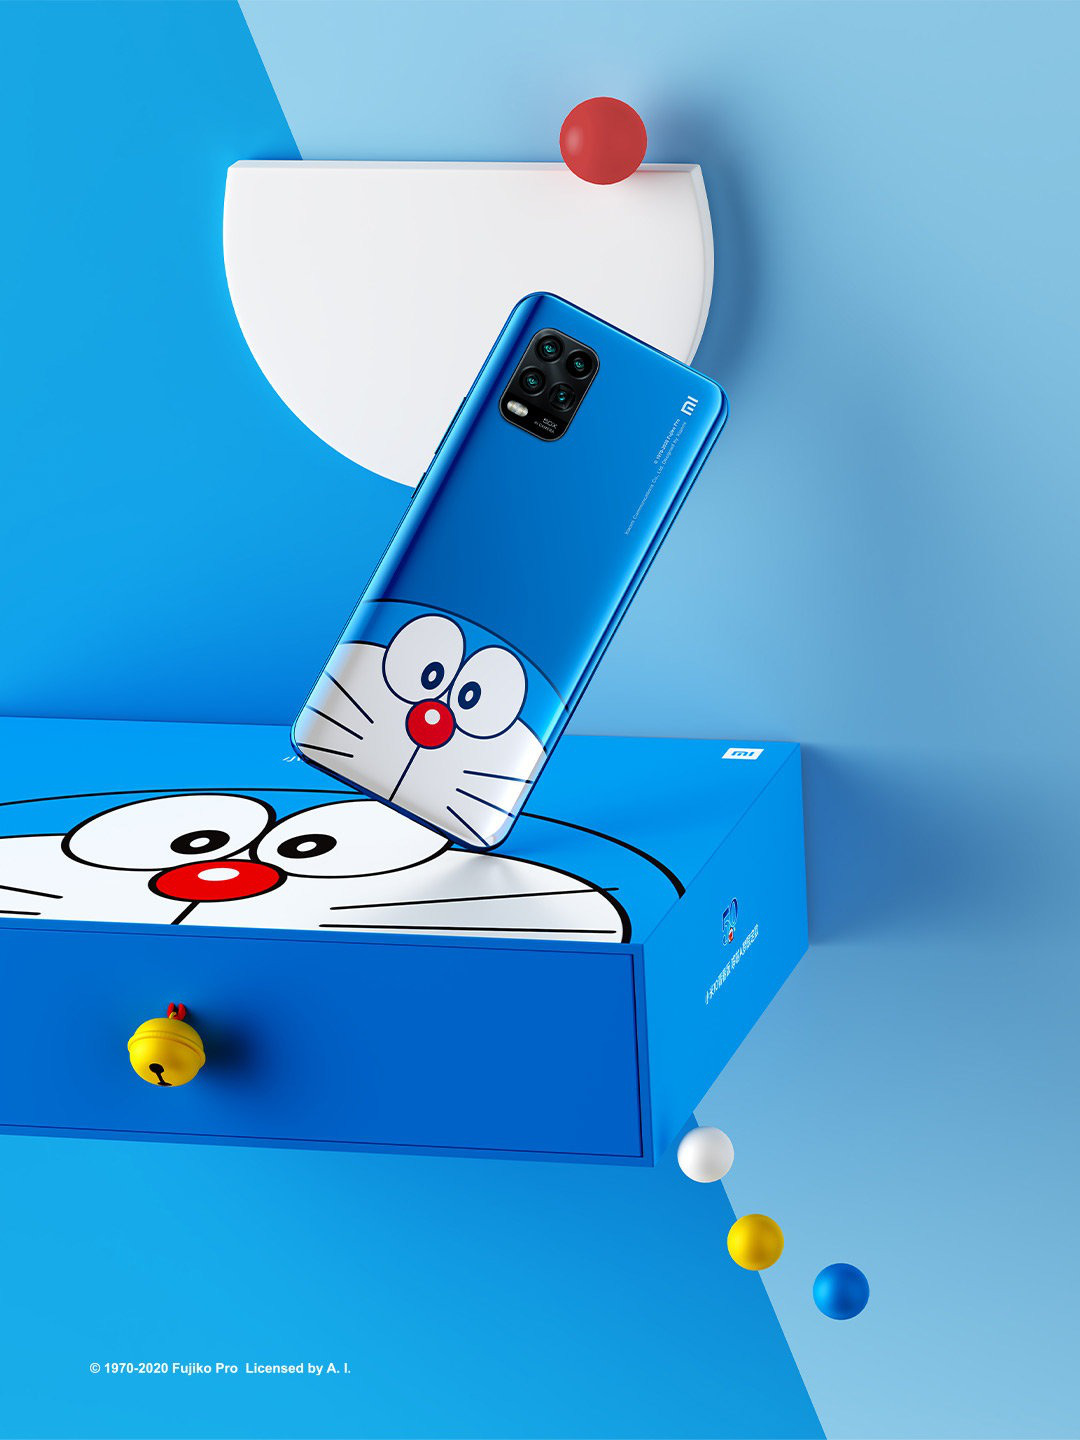 Điện thoại mèo ú Doraemon: Là một fan cuồng của bộ truyện tranh Doremon? Hãy tận hưởng niềm vui khi sử dụng điện thoại mèo ú Doremon để dễ dàng kết nối với bạn bè và gia đình của bạn. Với thiết kế độc đáo và chất lượng tốt, bạn sẽ không thể rời mắt khỏi điện thoại của mình.